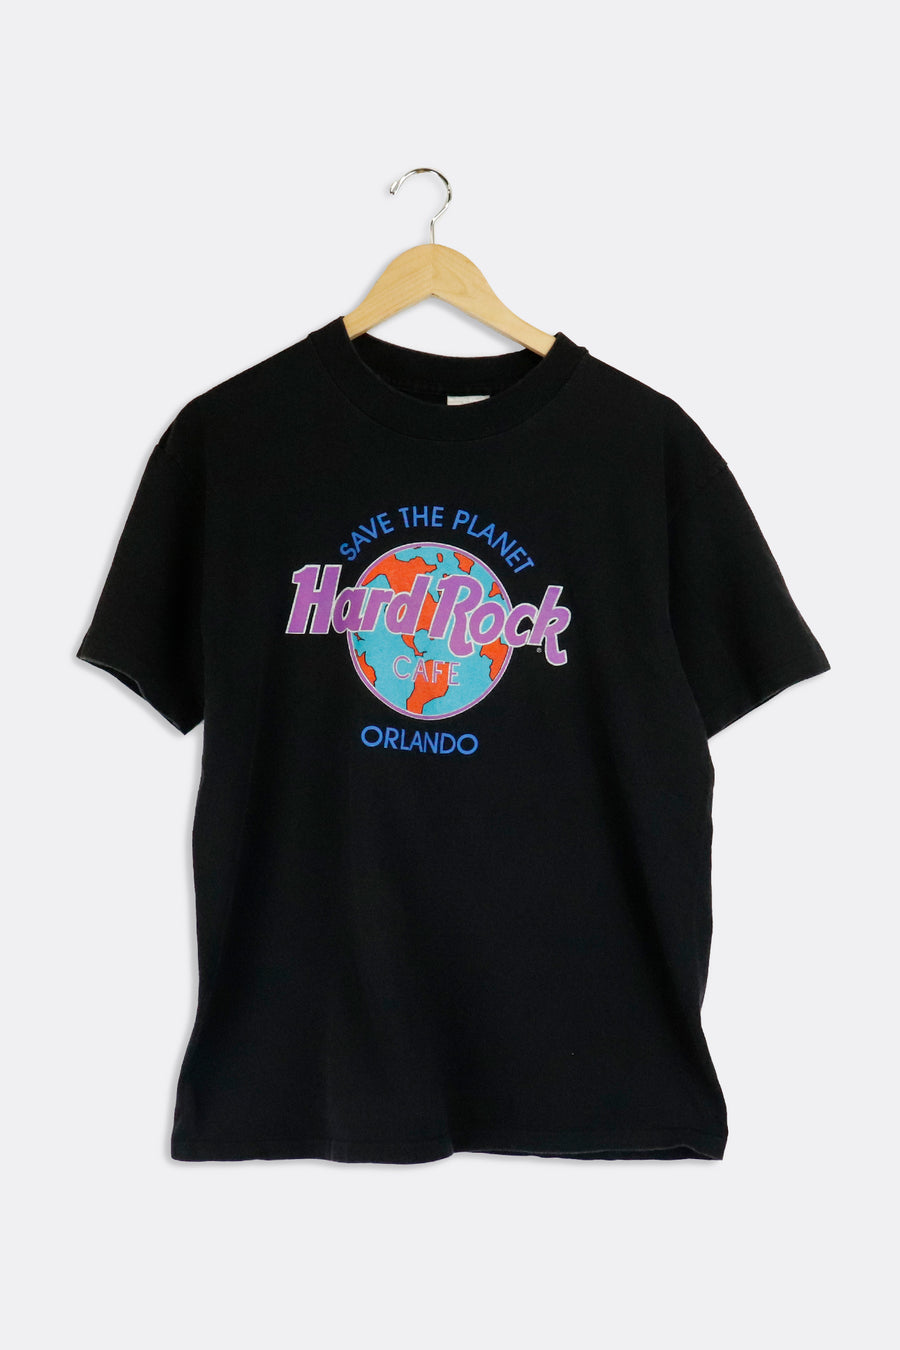 Vintage Hard Rock Cafe Black T Shirt M - XL